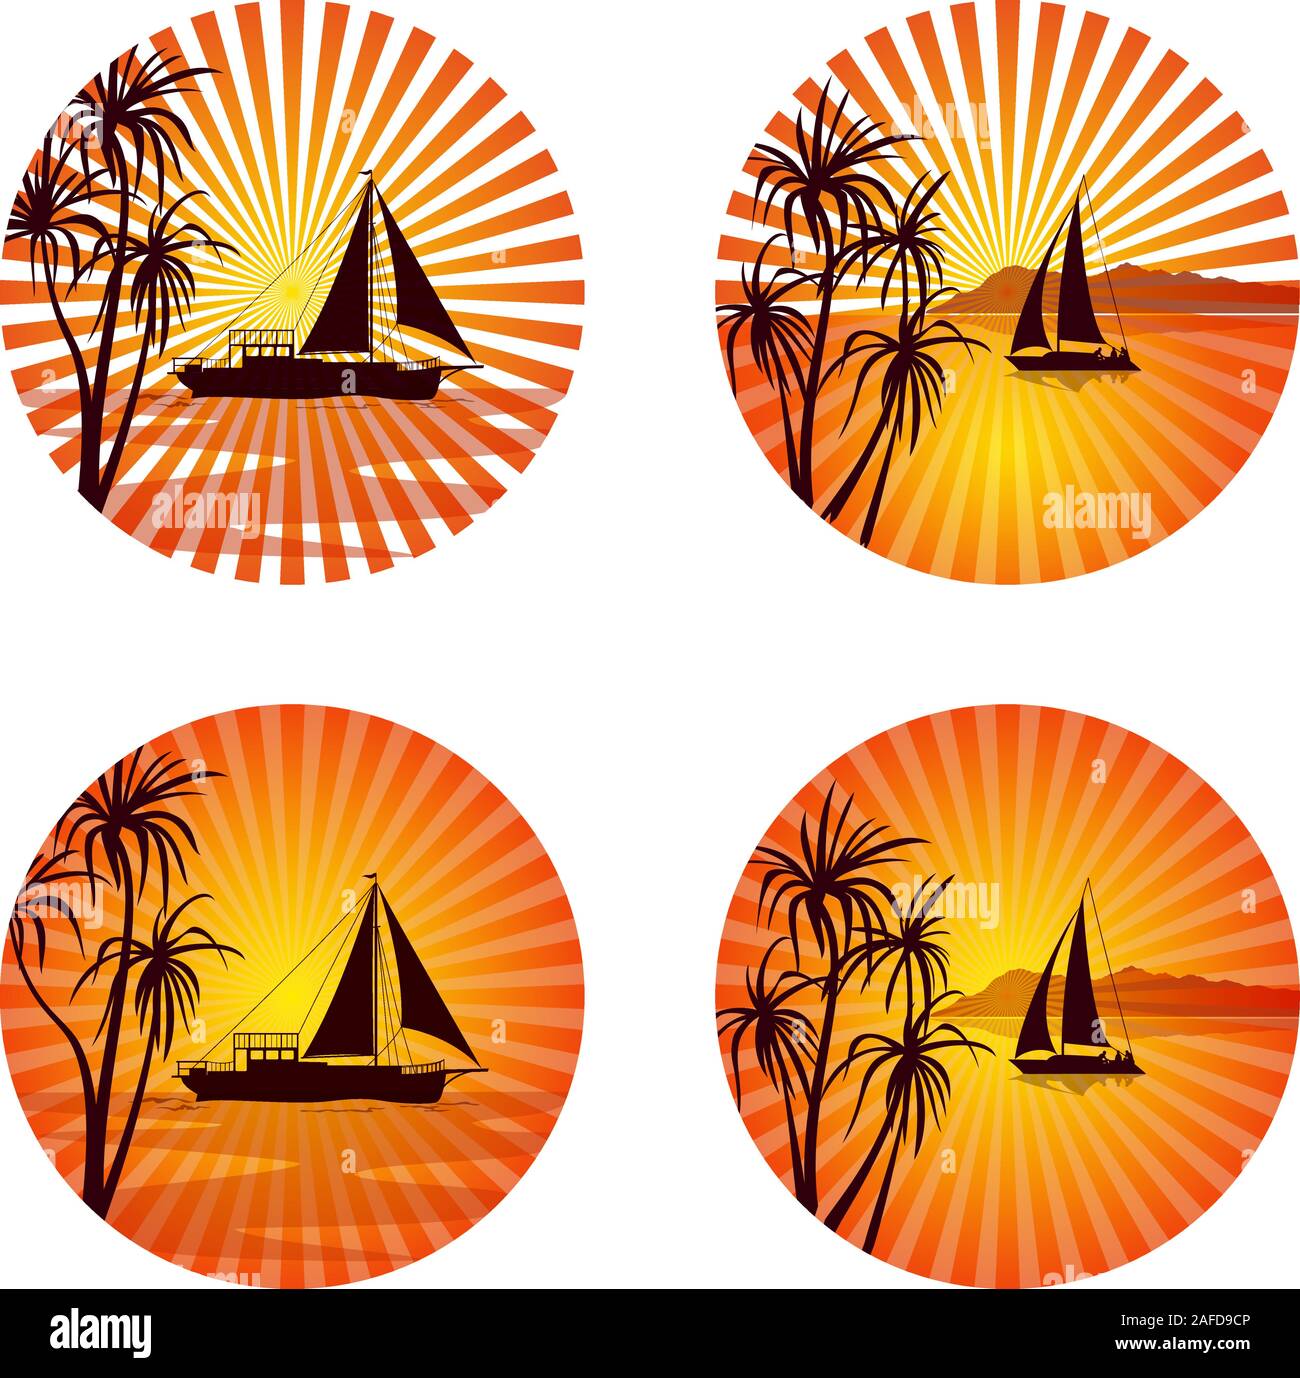 Icone, logo o etichette, paesaggio tropicale con navi e palme esotiche alberi sagome sul cerchio con sfondo arancione e giallo sole travi. Vettore Illustrazione Vettoriale